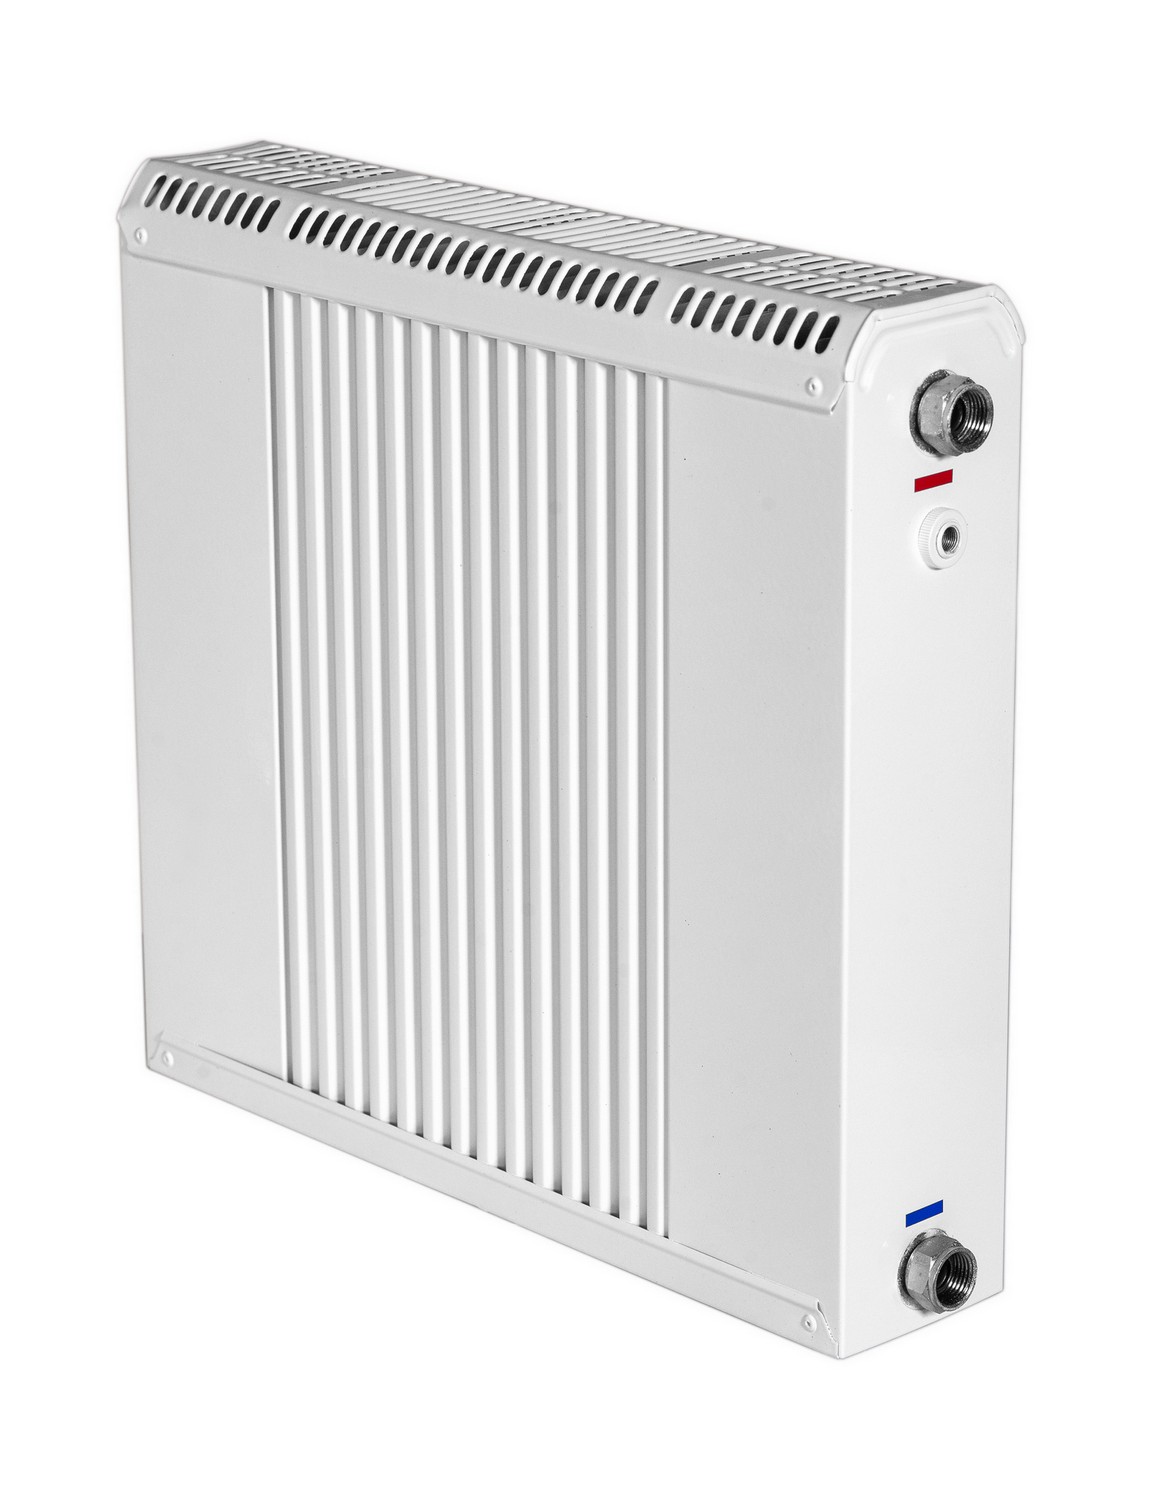 Радиатор для отопления Термия РБ 40/80 в интернет-магазине, главное фото